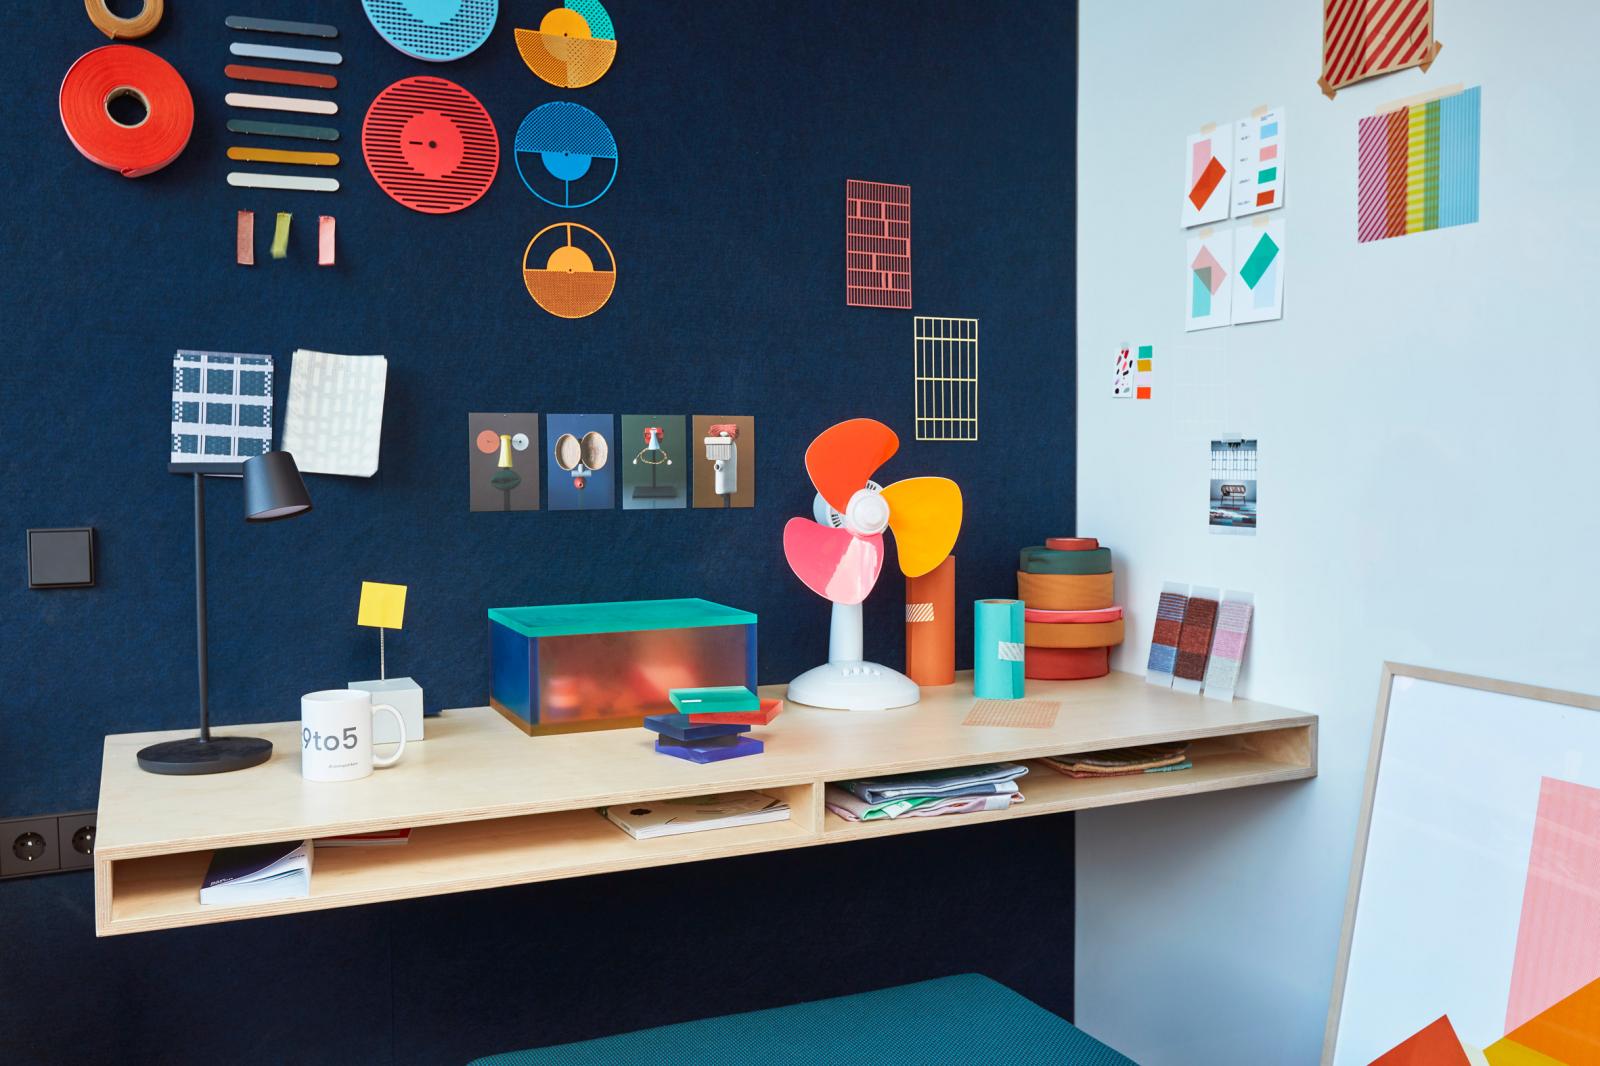 Raw Color đã thêm nghệ thuật treo tường tạo điểm nhấn màu sắc tươi sáng, hấp dẫn cho không gian văn phòng nhỏ hẹp.